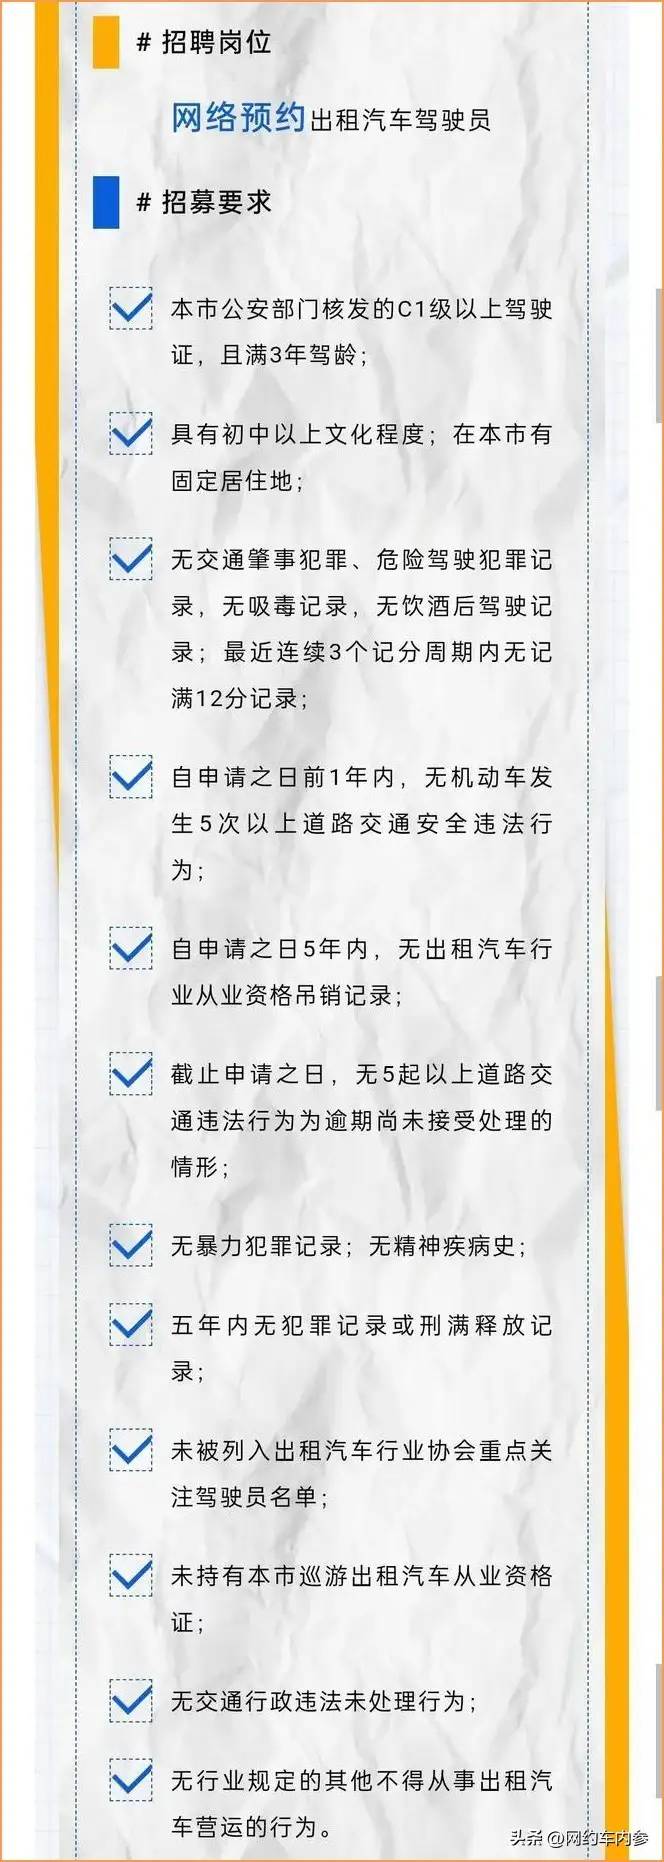 上海出租车公司招聘网约车司机，没有户籍要求